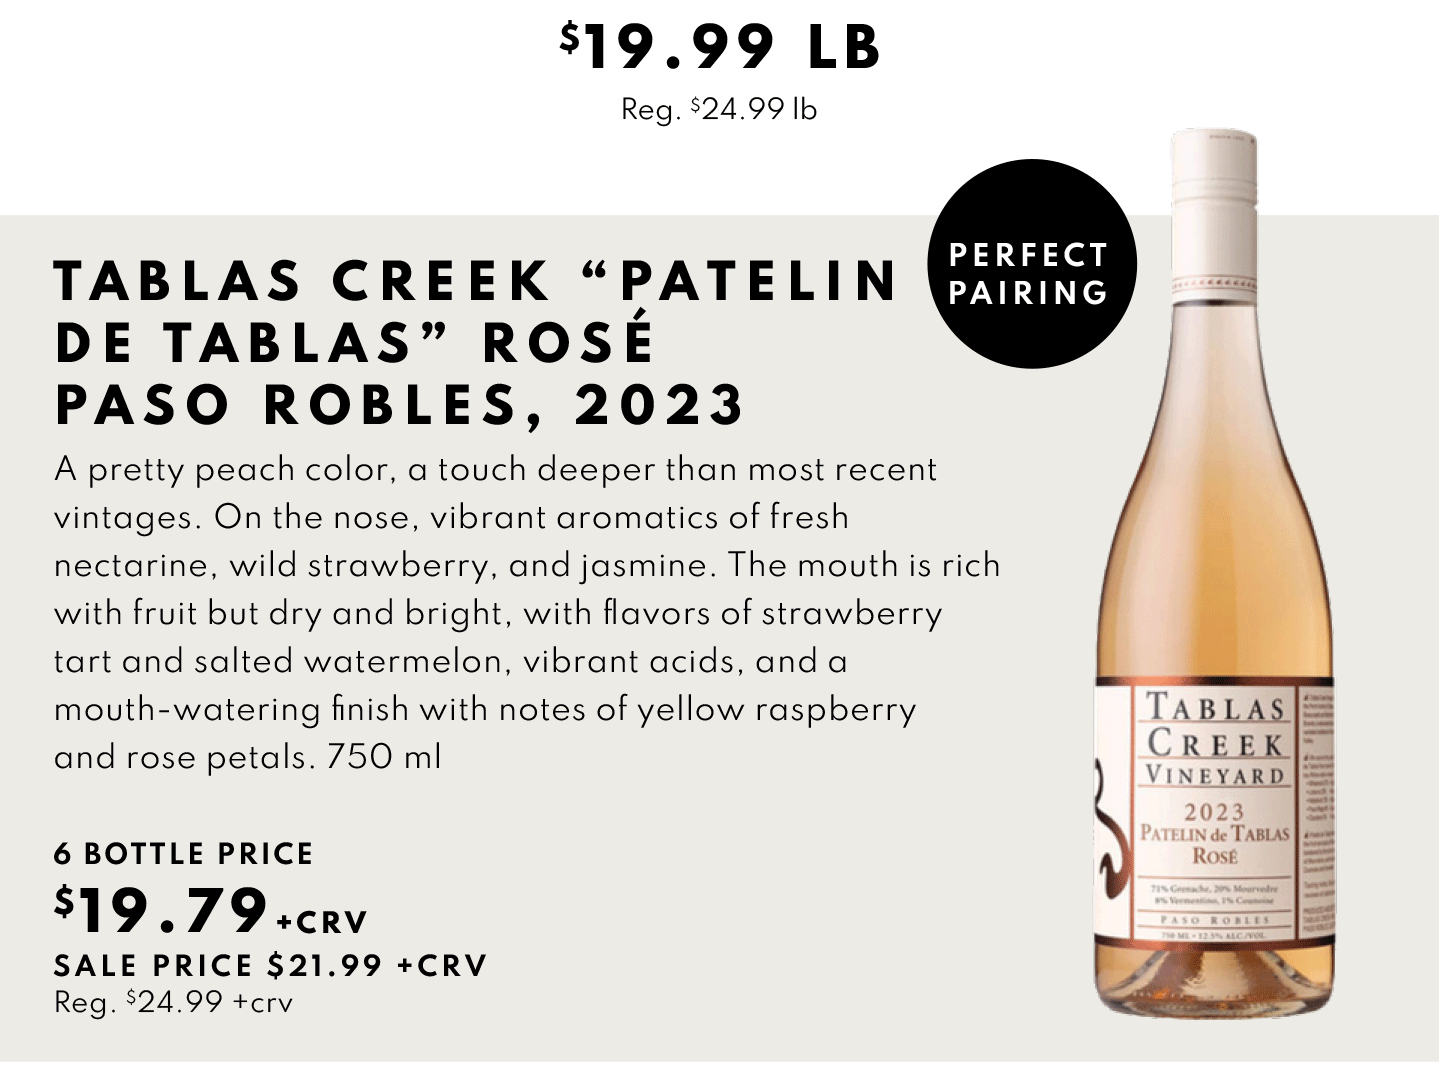 Tablas Creek Patelin De Tablas Rose, Paso Robles 2023 $19.79, 6 bottle price